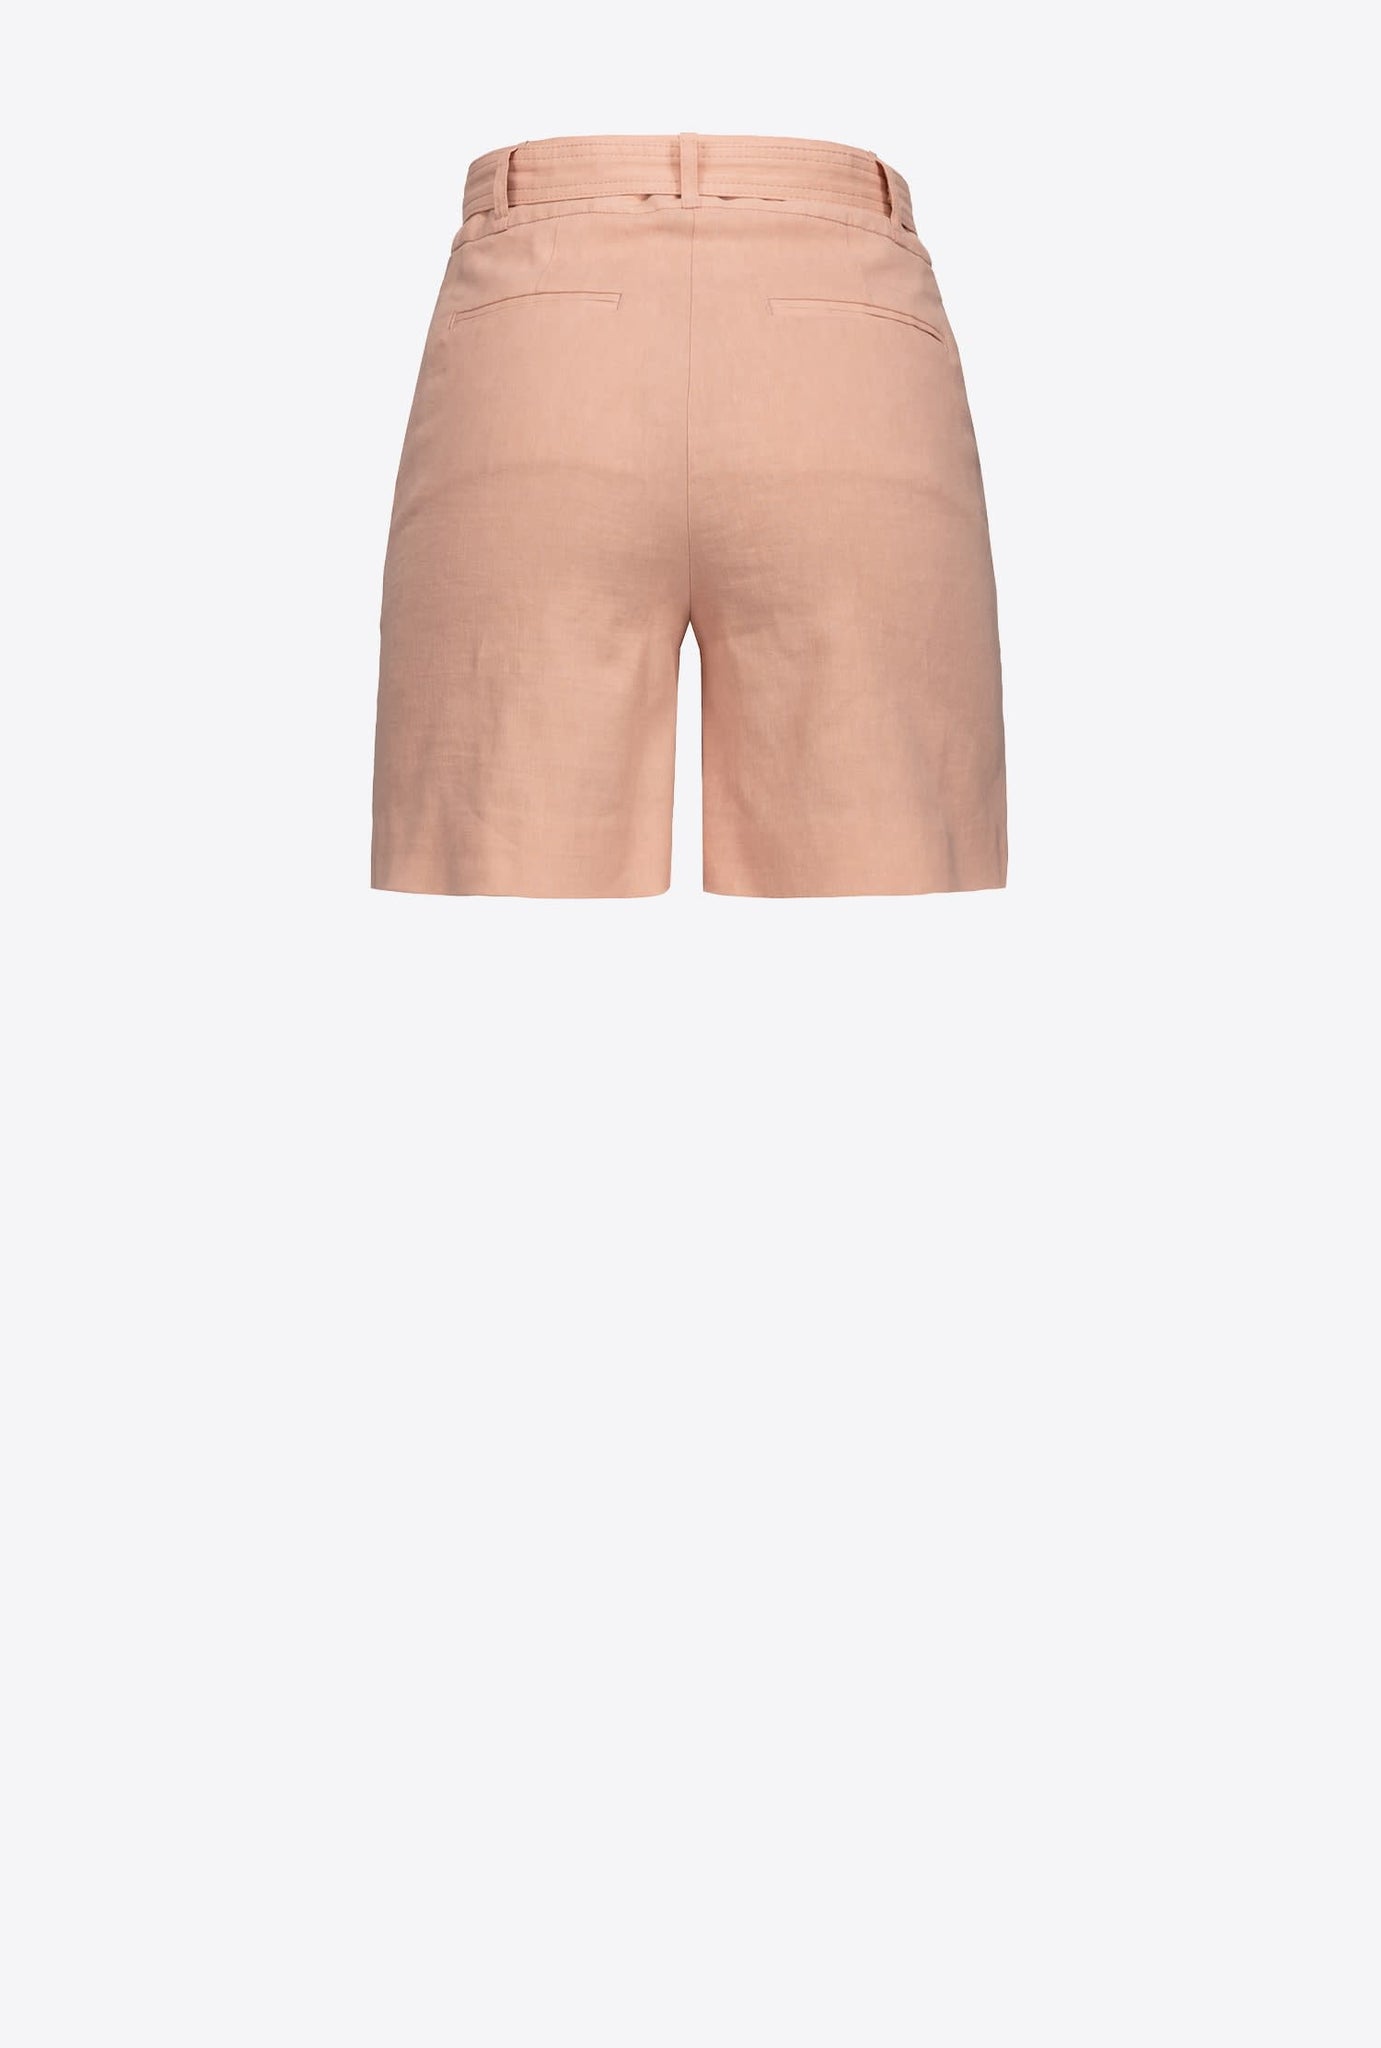 Pantaloncino Pinko con Cintura / Rosa - Ideal Moda